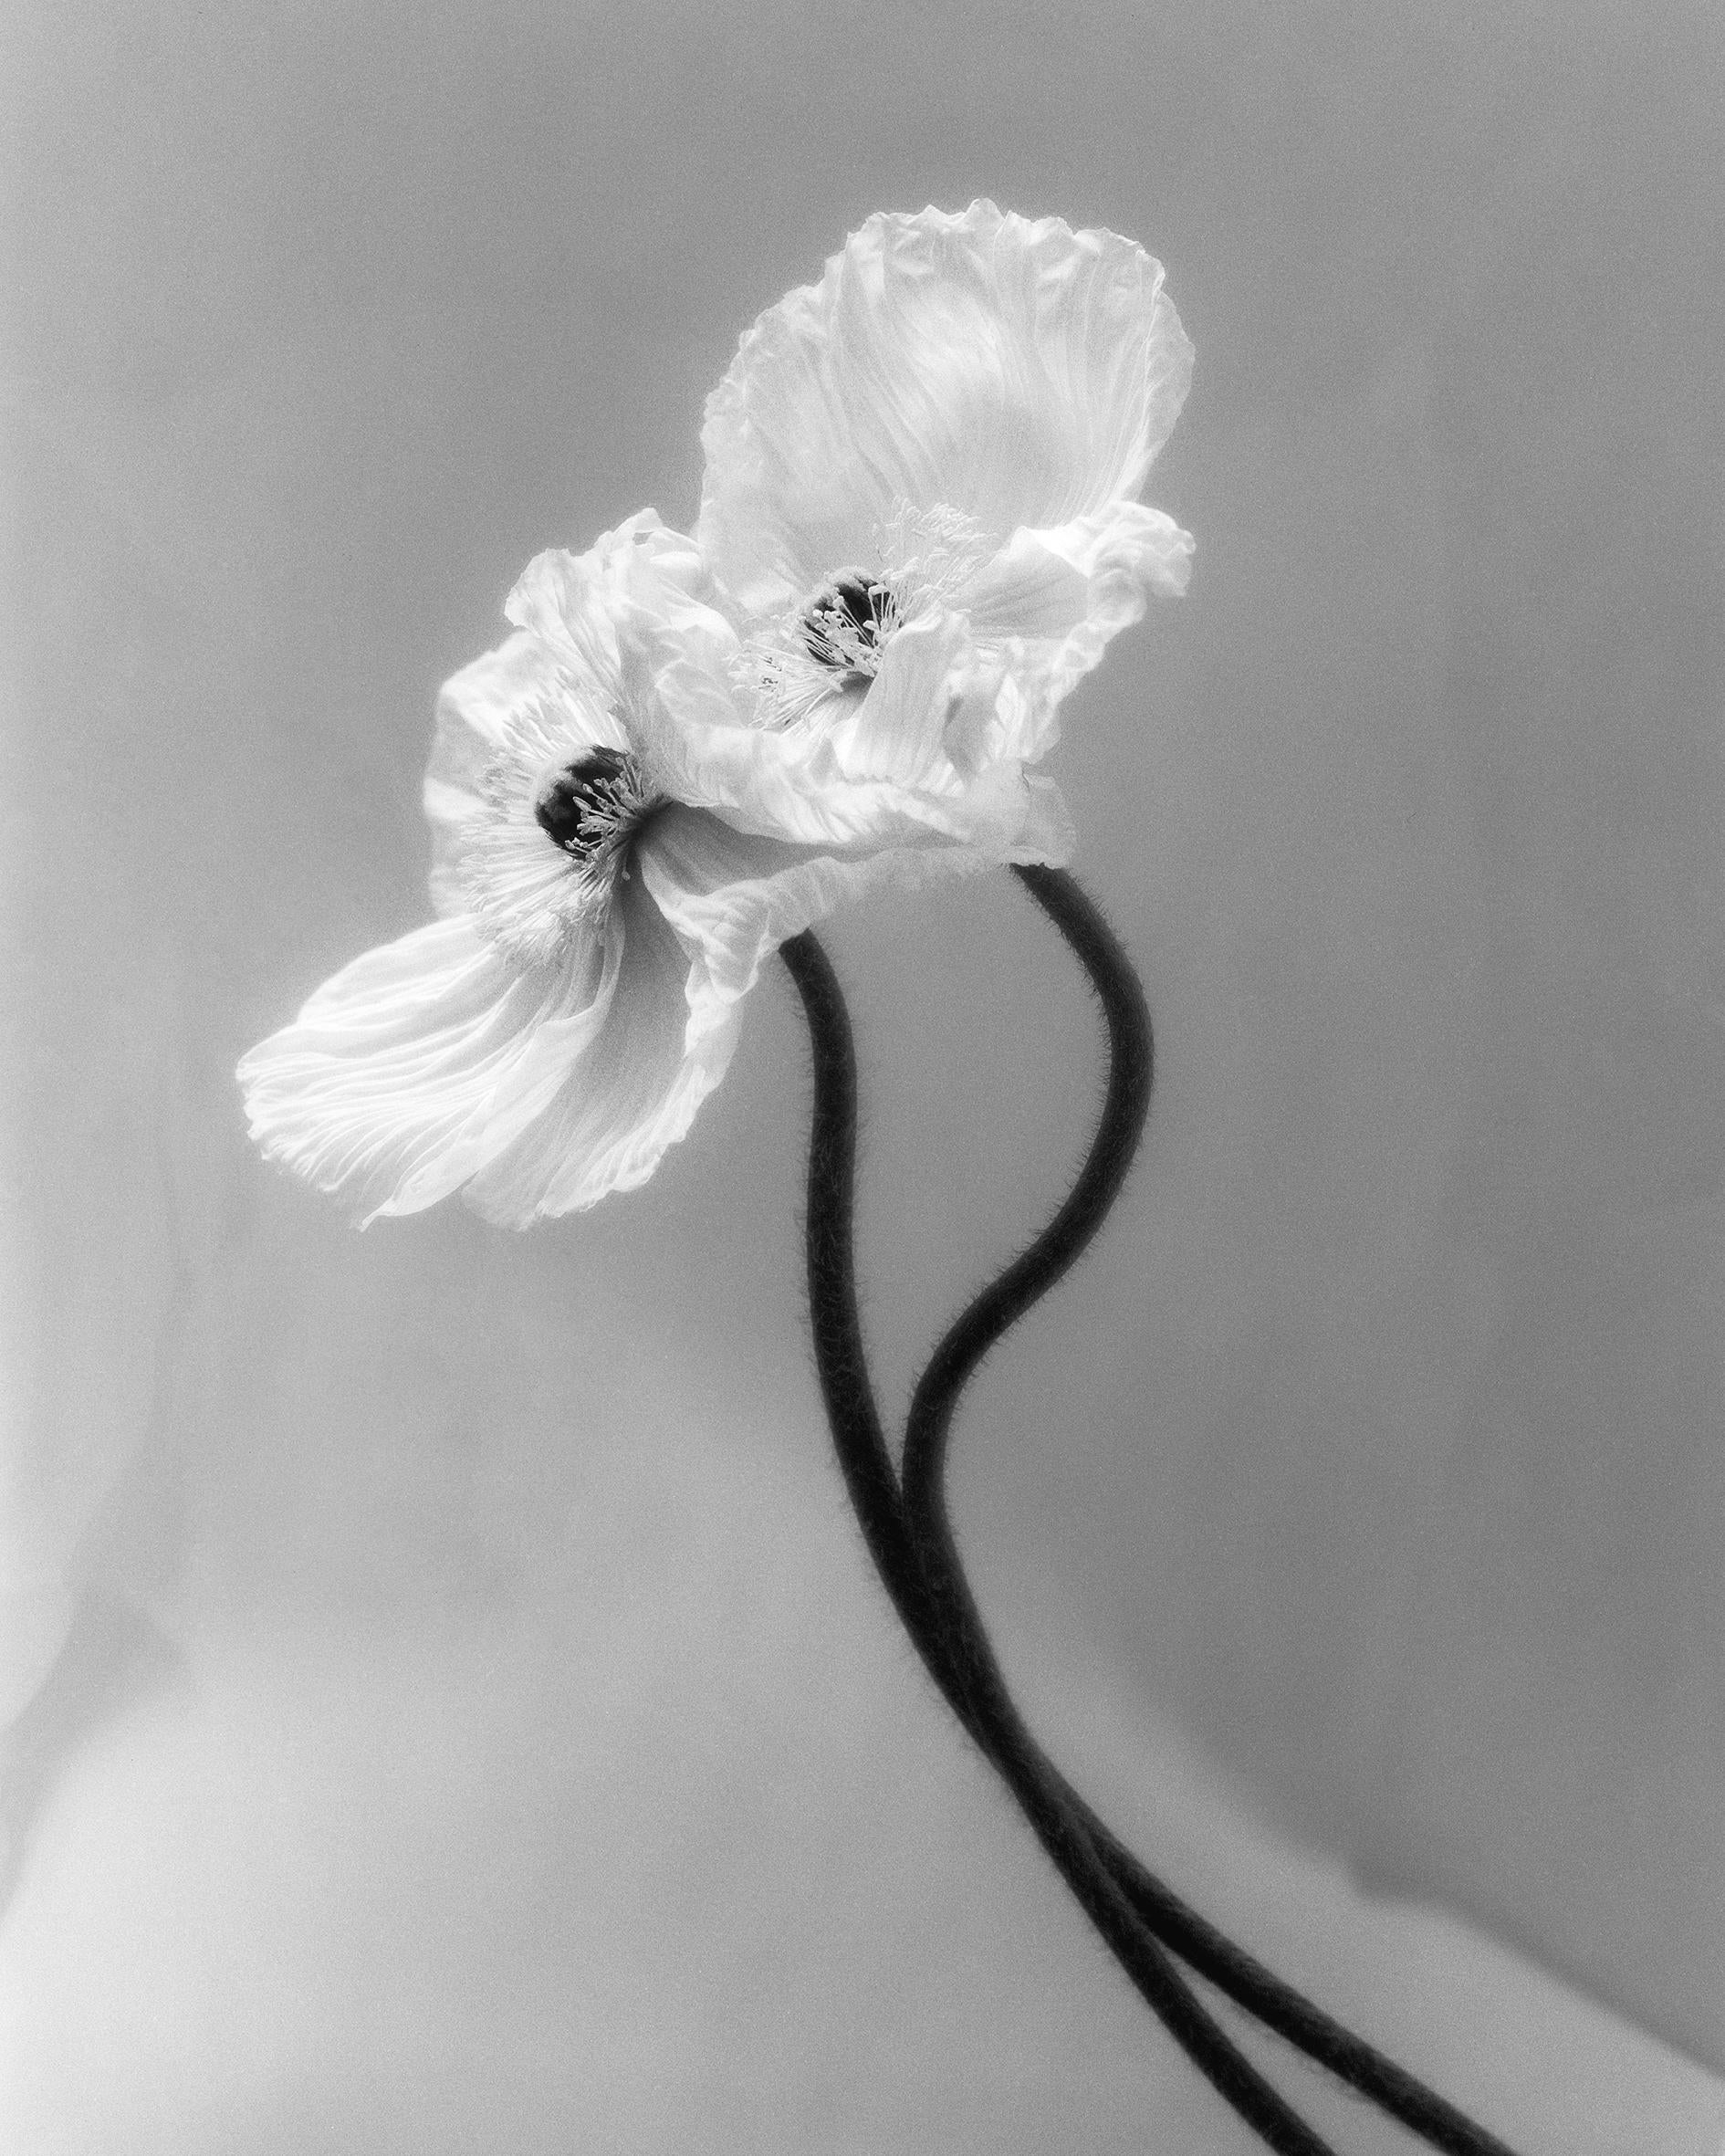 Ugne Pouwell Black and White Photograph – Coupled Poppies – analoge schwarz-weiße Blumenfotografie in Schwarz-Weiß, Ltd. 15